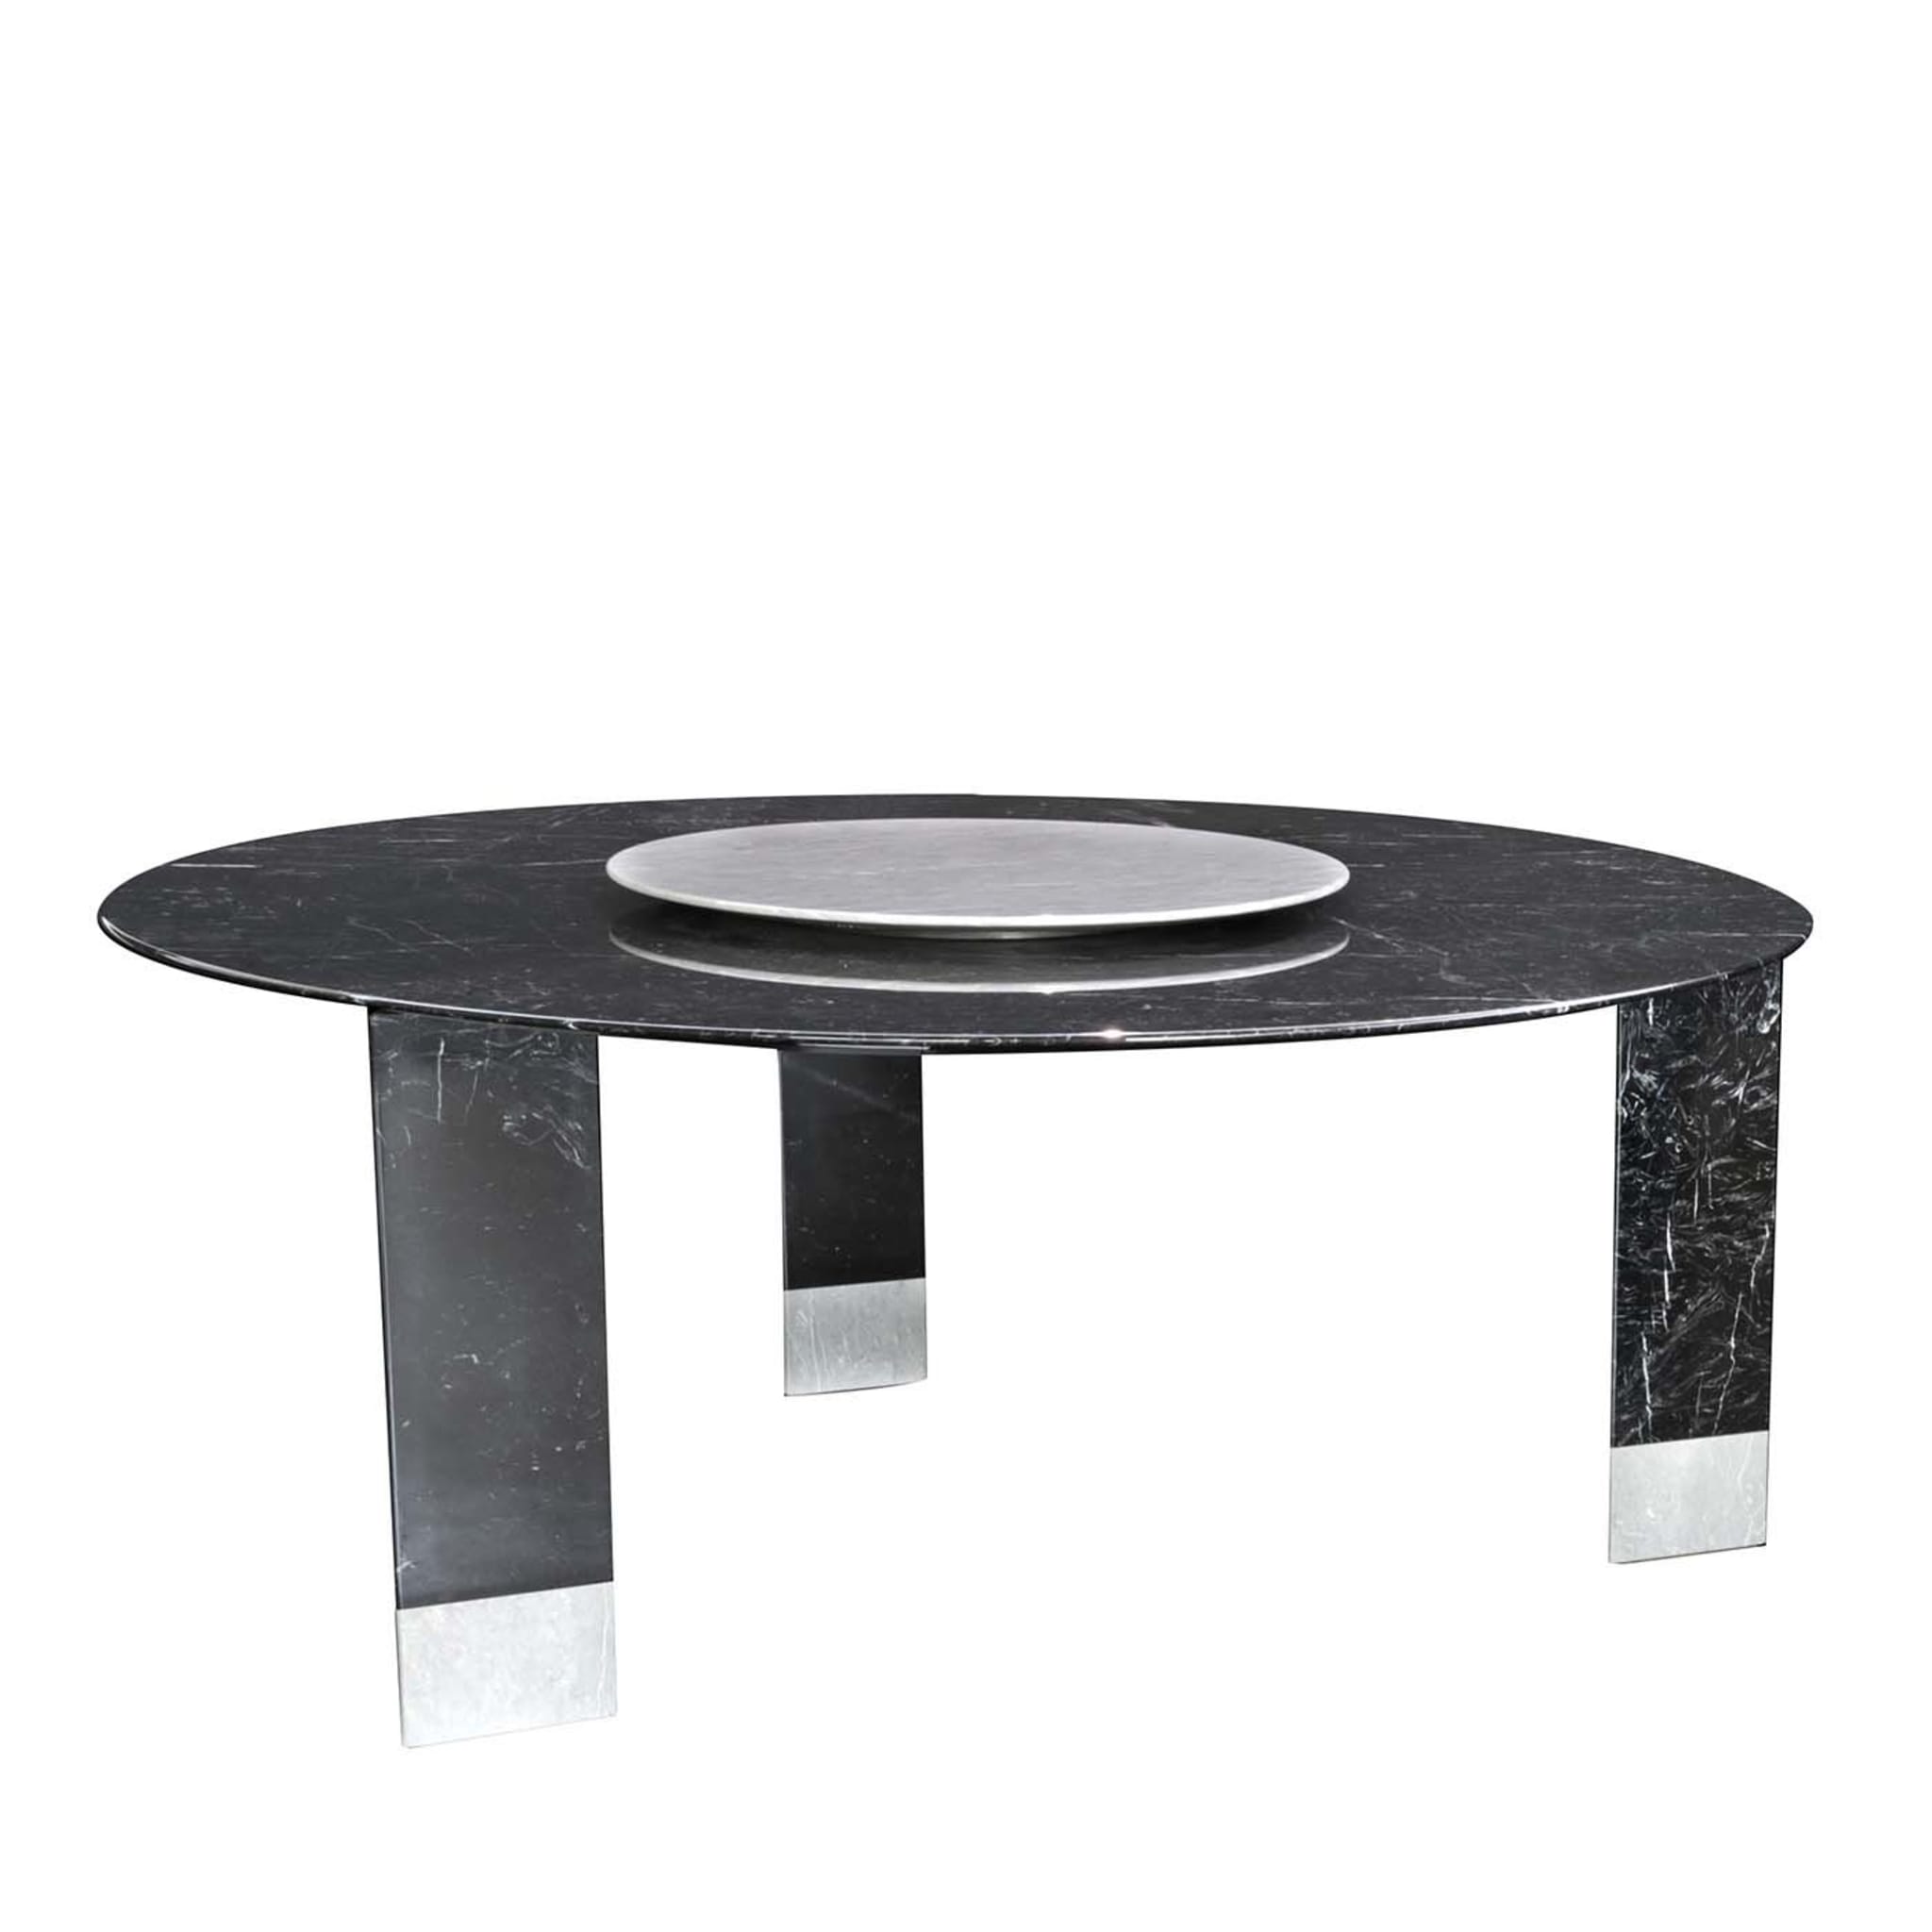 Alba Table in Black Marquinia Marble by Giorgio Soressi - Main view